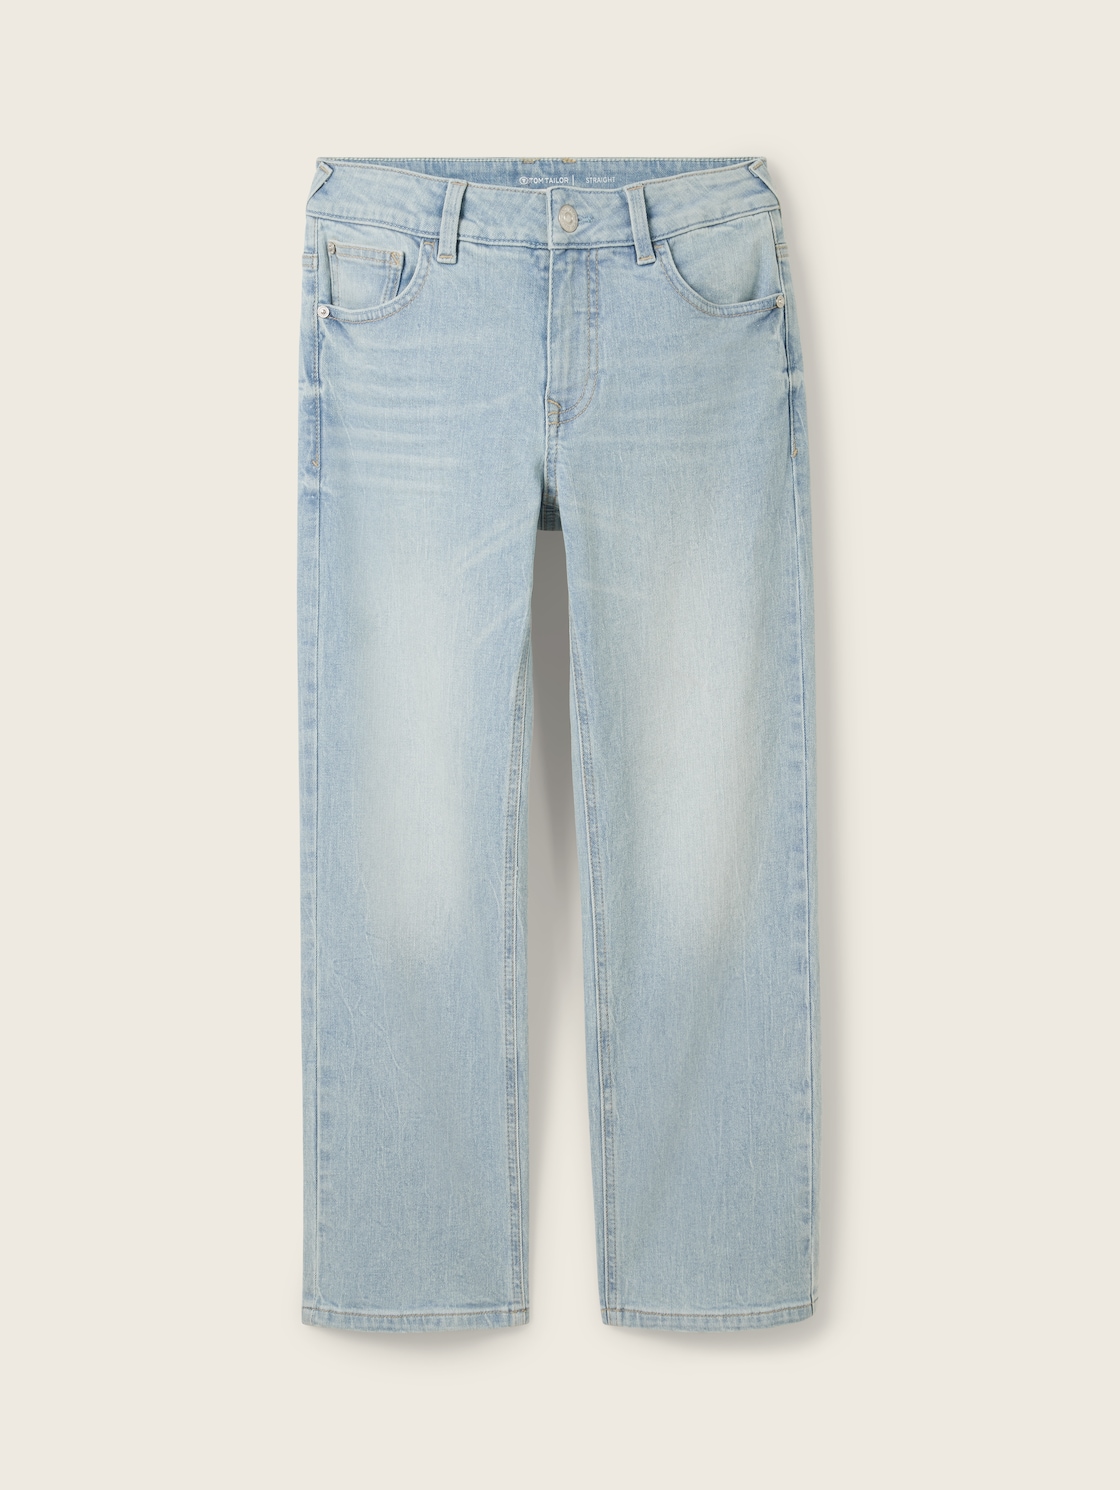 TOM TAILOR Jungen Straight Jeans mit Bio-Baumwolle, blau, Uni, Gr. 128 von Tom Tailor